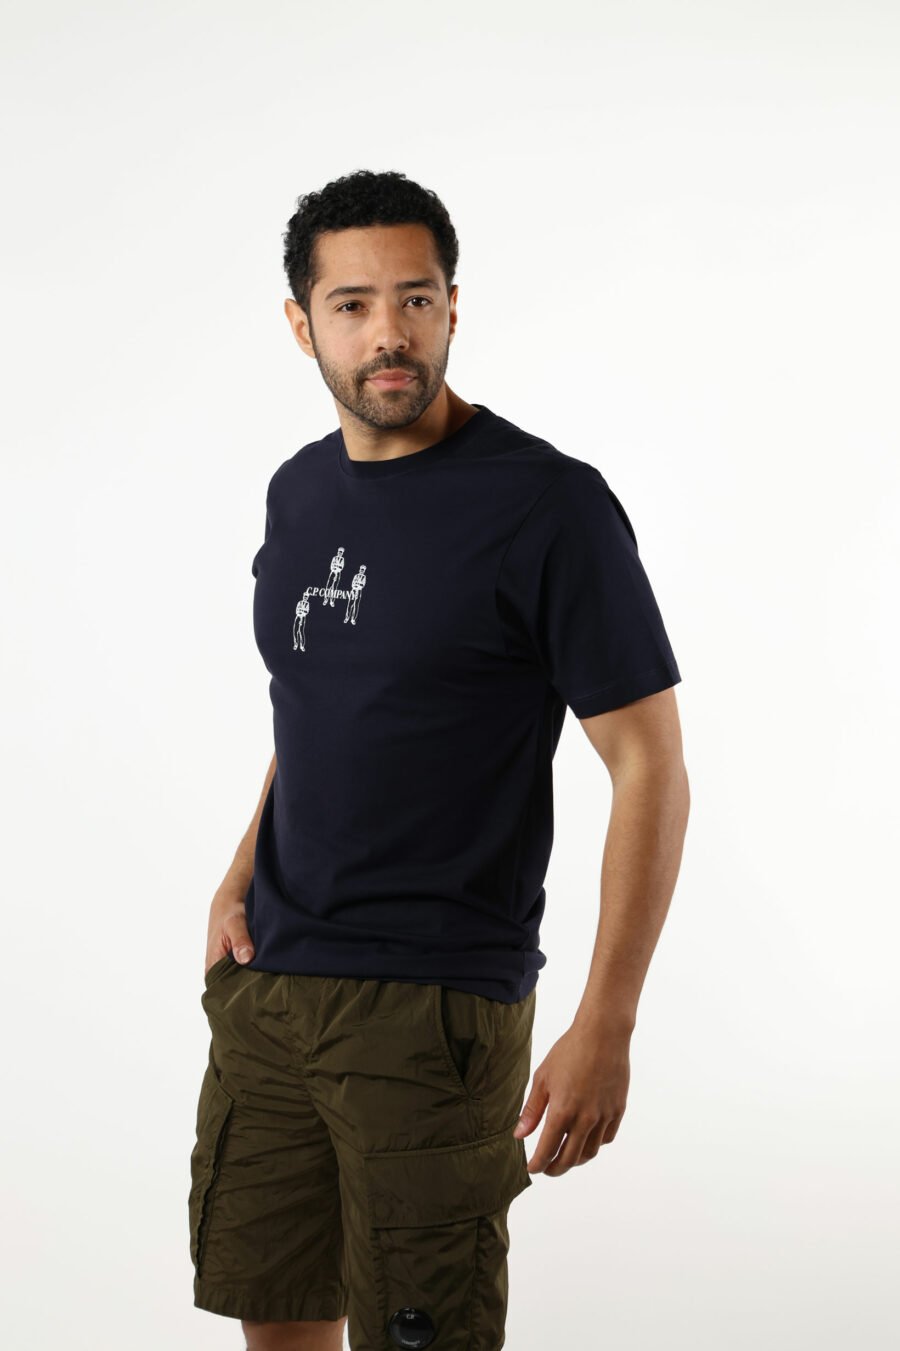 Dunkelblaues T-Shirt mit Minilogue "cp" mit zentrierten Matrosen - 111347